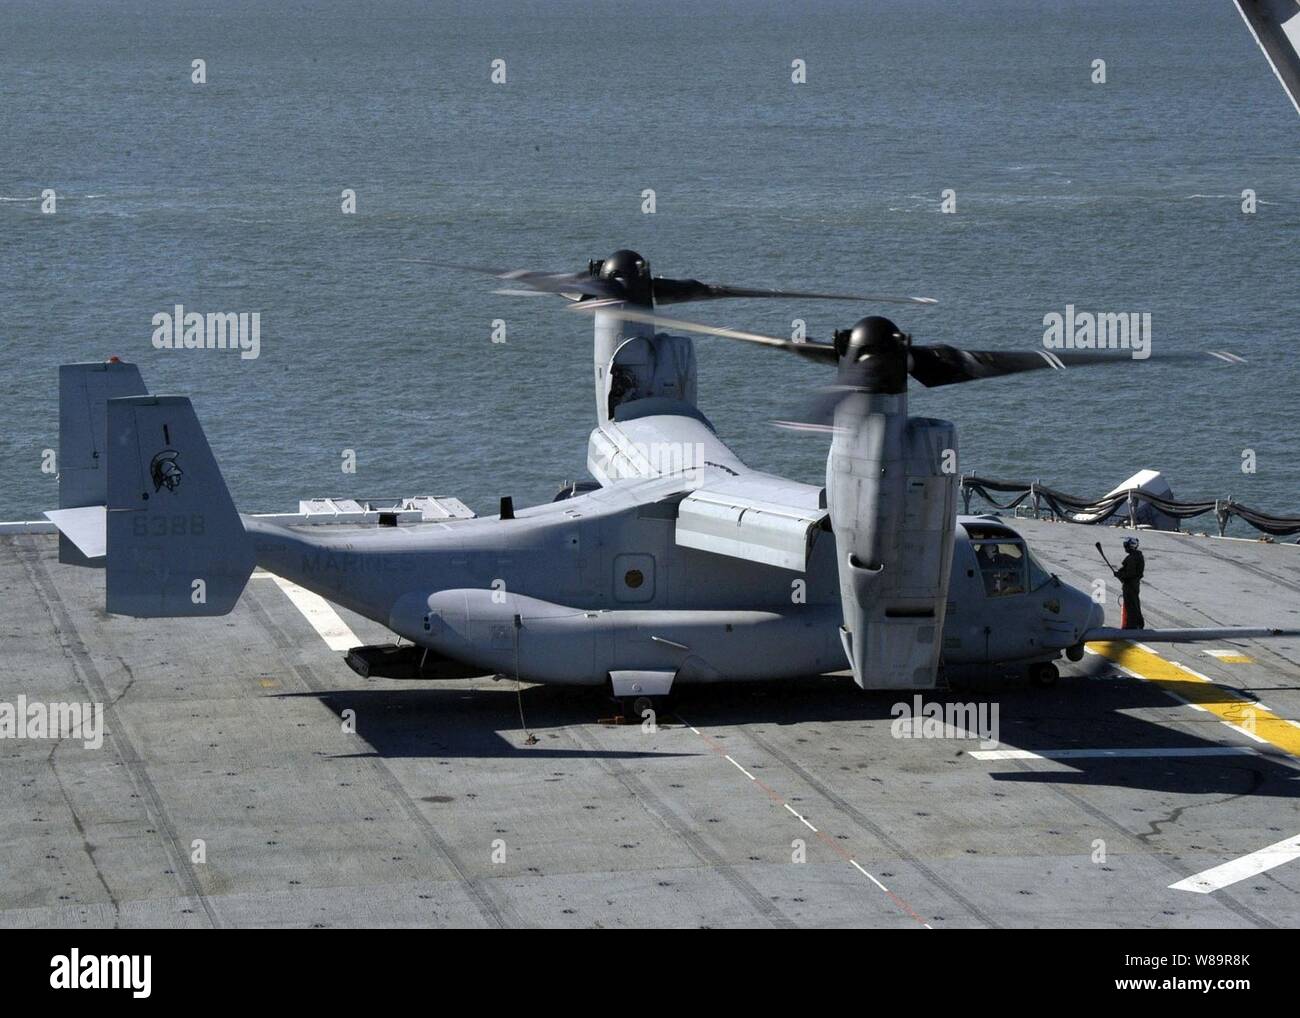 Un Cuerpo de Marines de EE.UU MV-22 Osprey se prepara para despegar de la cubierta de vuelo del buque de asalto anfibio USS Wasp (LHD 1) en la Estación Naval de Norfolk, Virginia, el 2 de noviembre de 2005. La aeronave tiltrotor está programado para reemplazar el envejecimiento CH-46E Sea Knight y tipo CH-53D Mar Stallion helicópteros que actualmente están en servicio. El águila pescadora se asigna a Marine Tiltrotor prueba y evaluación 22 Escuadrón de Marine Corps Air Station New River, Carolina del Norte. Foto de stock